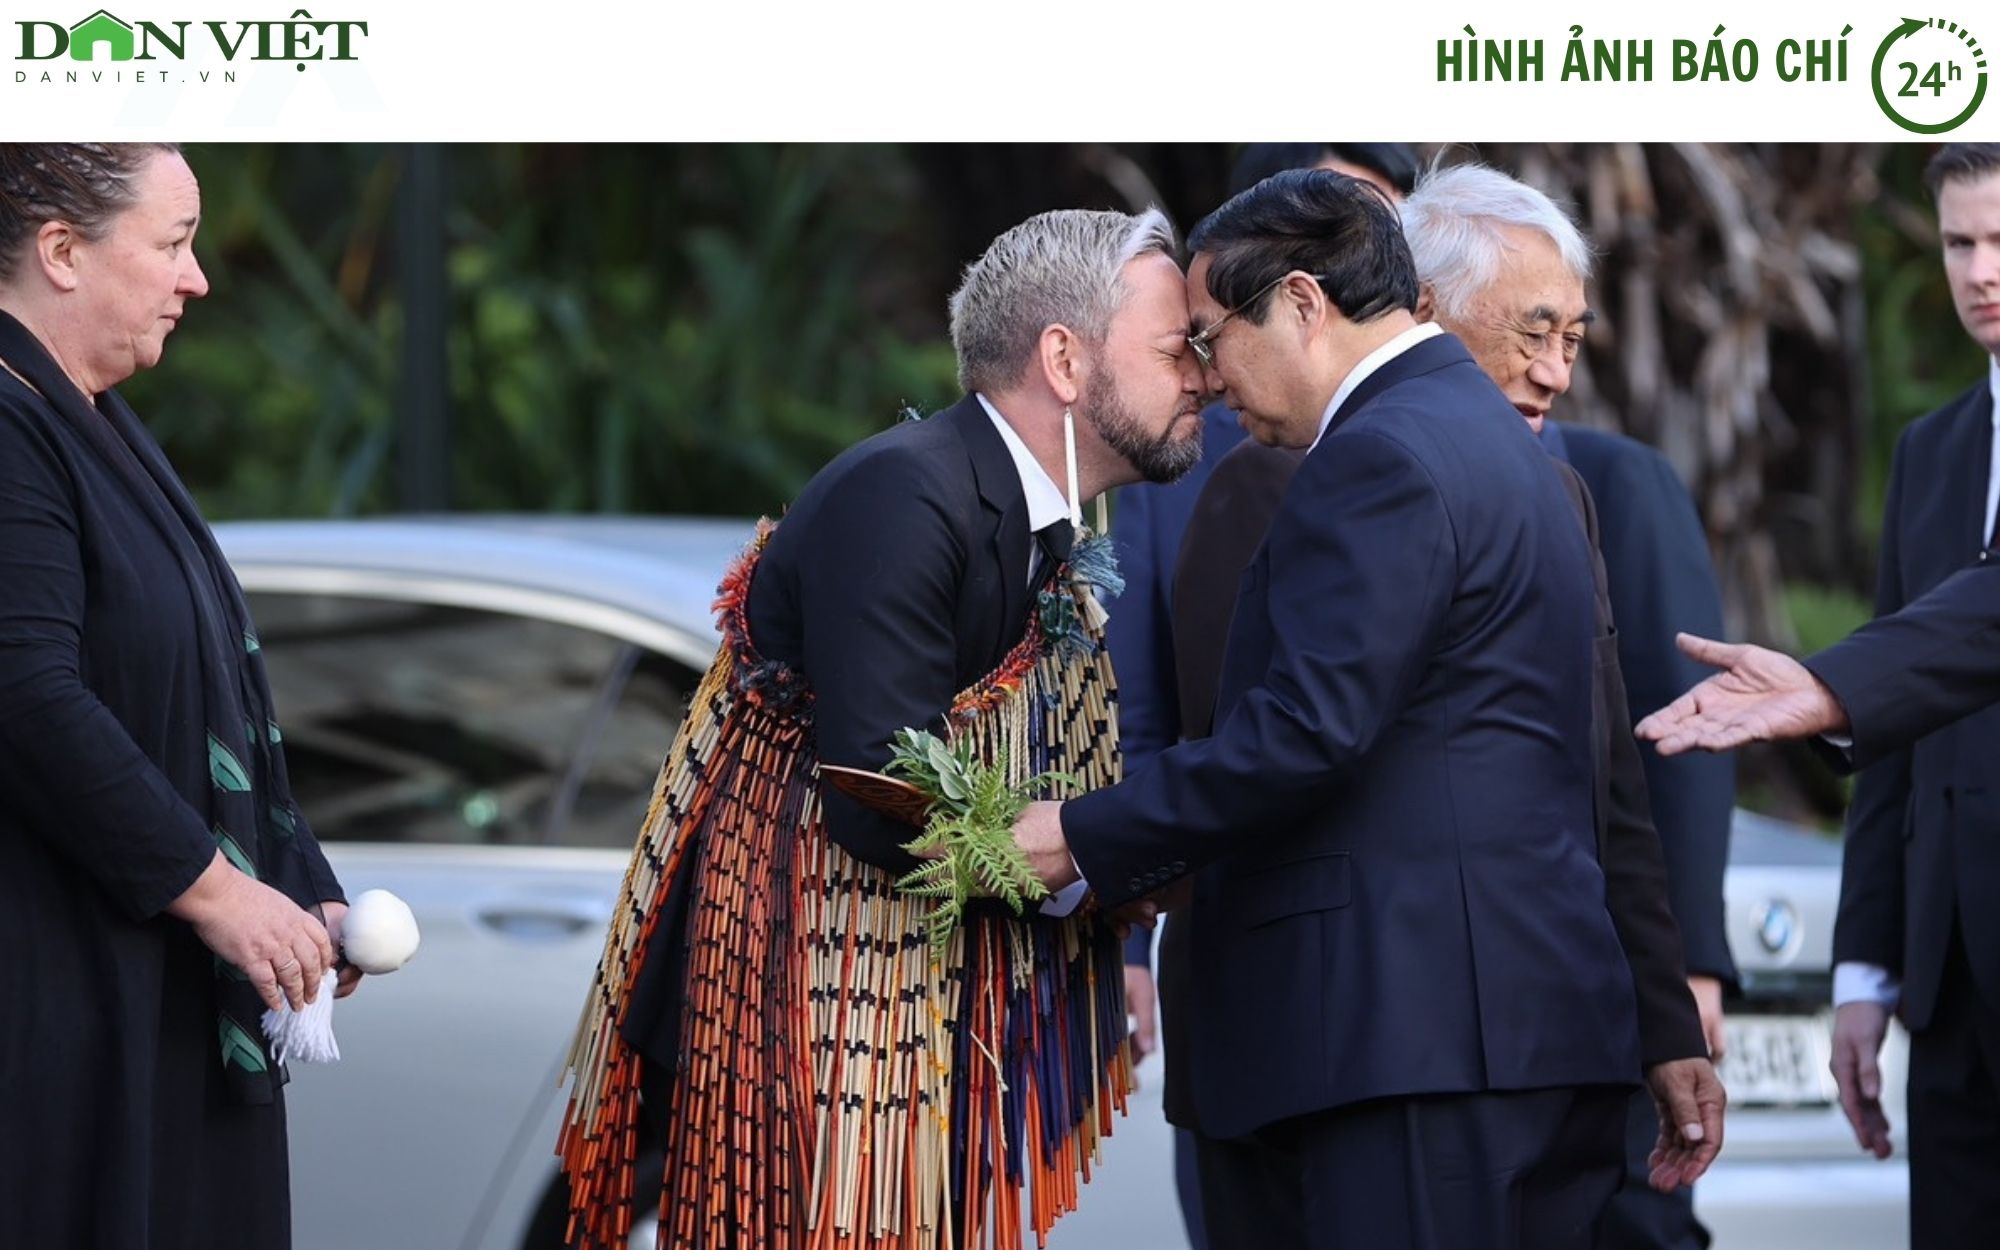 Hình ảnh báo chí 24h: New Zealand bắn 19 phát đại bác chào mừng Thủ tướng Phạm Minh Chính